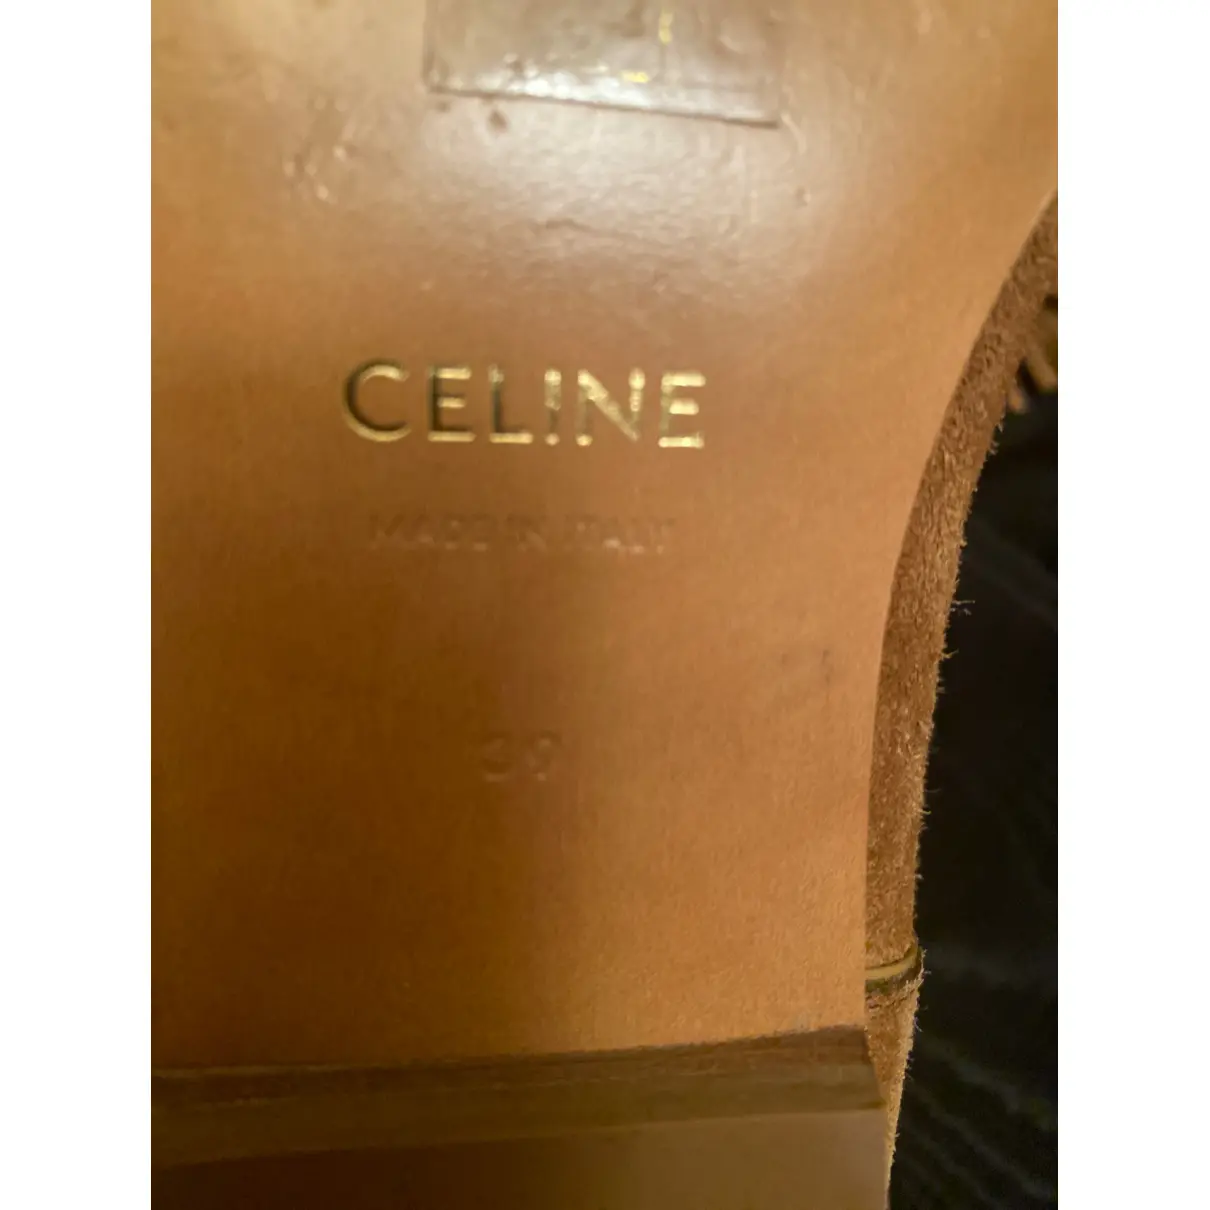 Buy Celine Boots online